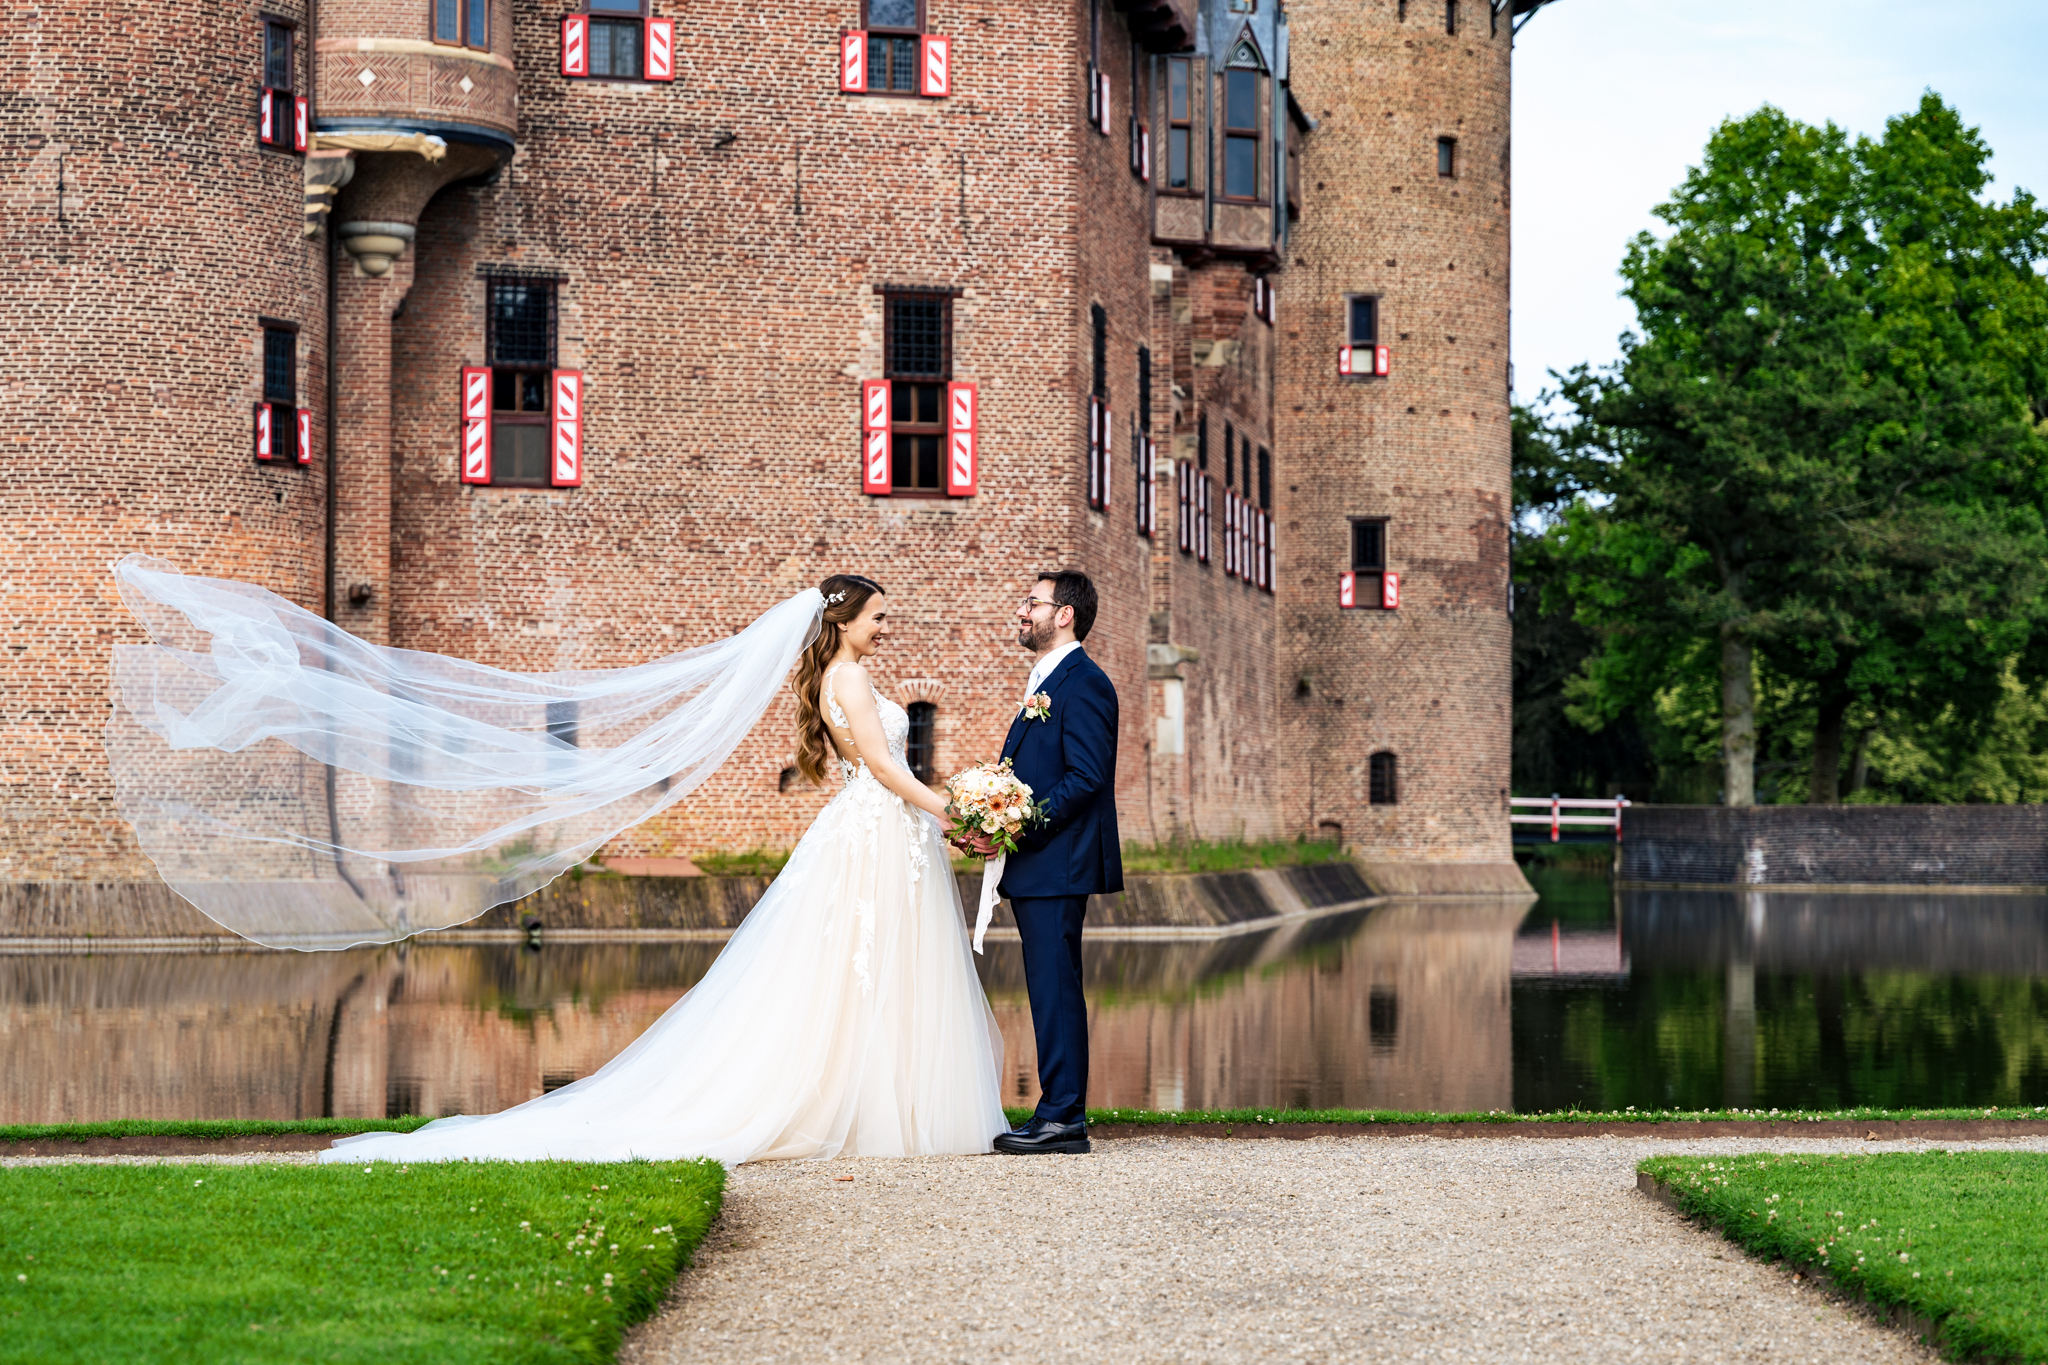 Wedding at the Castle De Haar